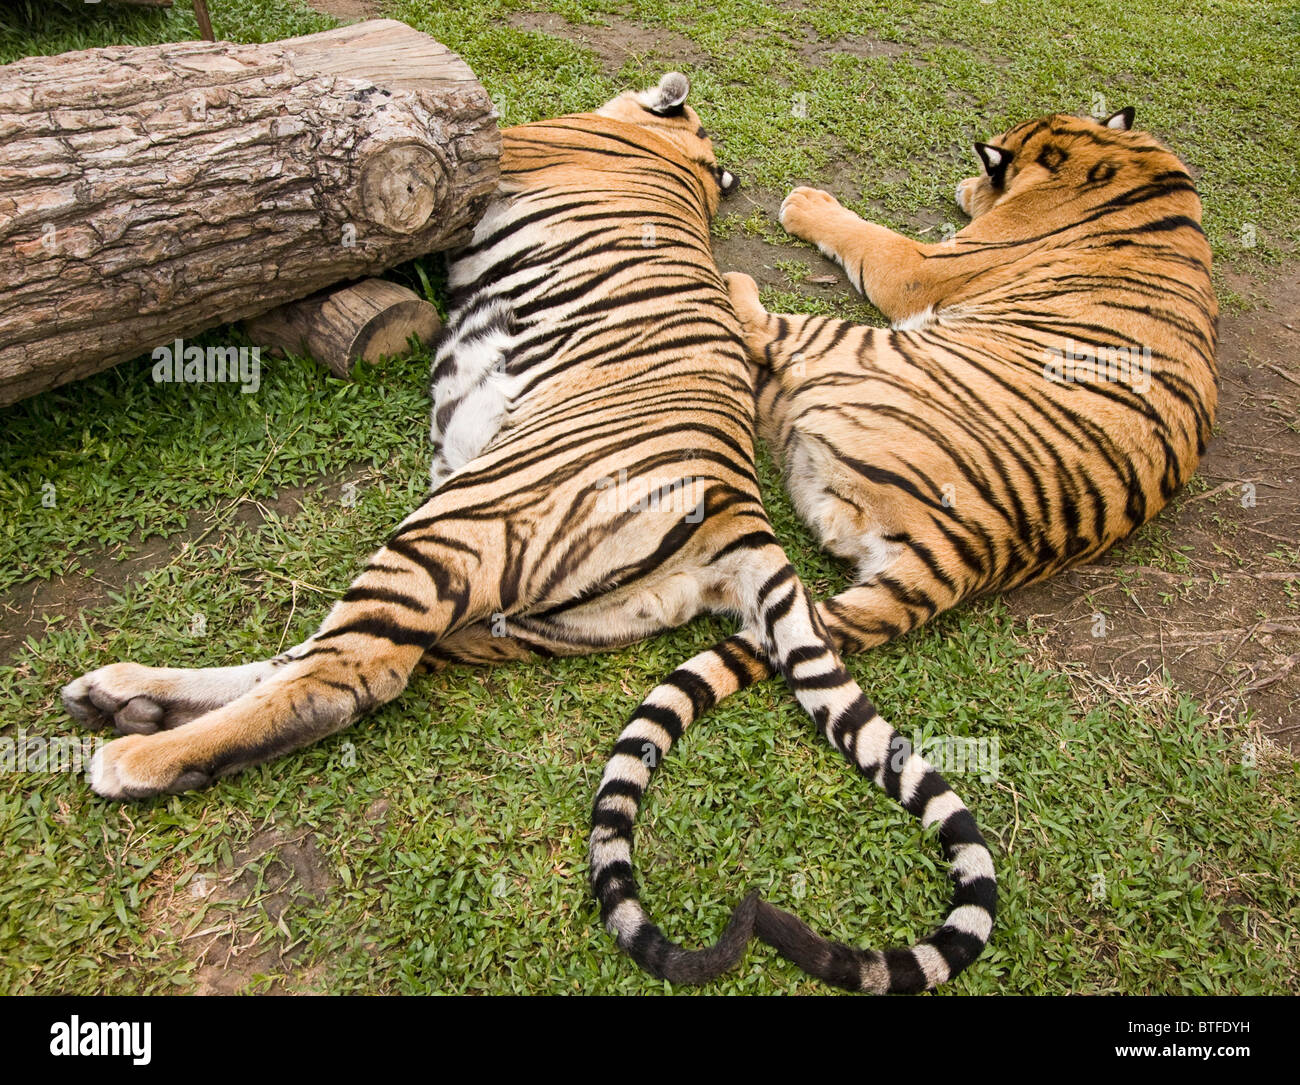 Tiger t shirt hi-res stock photography and images - Alamy - jyukan